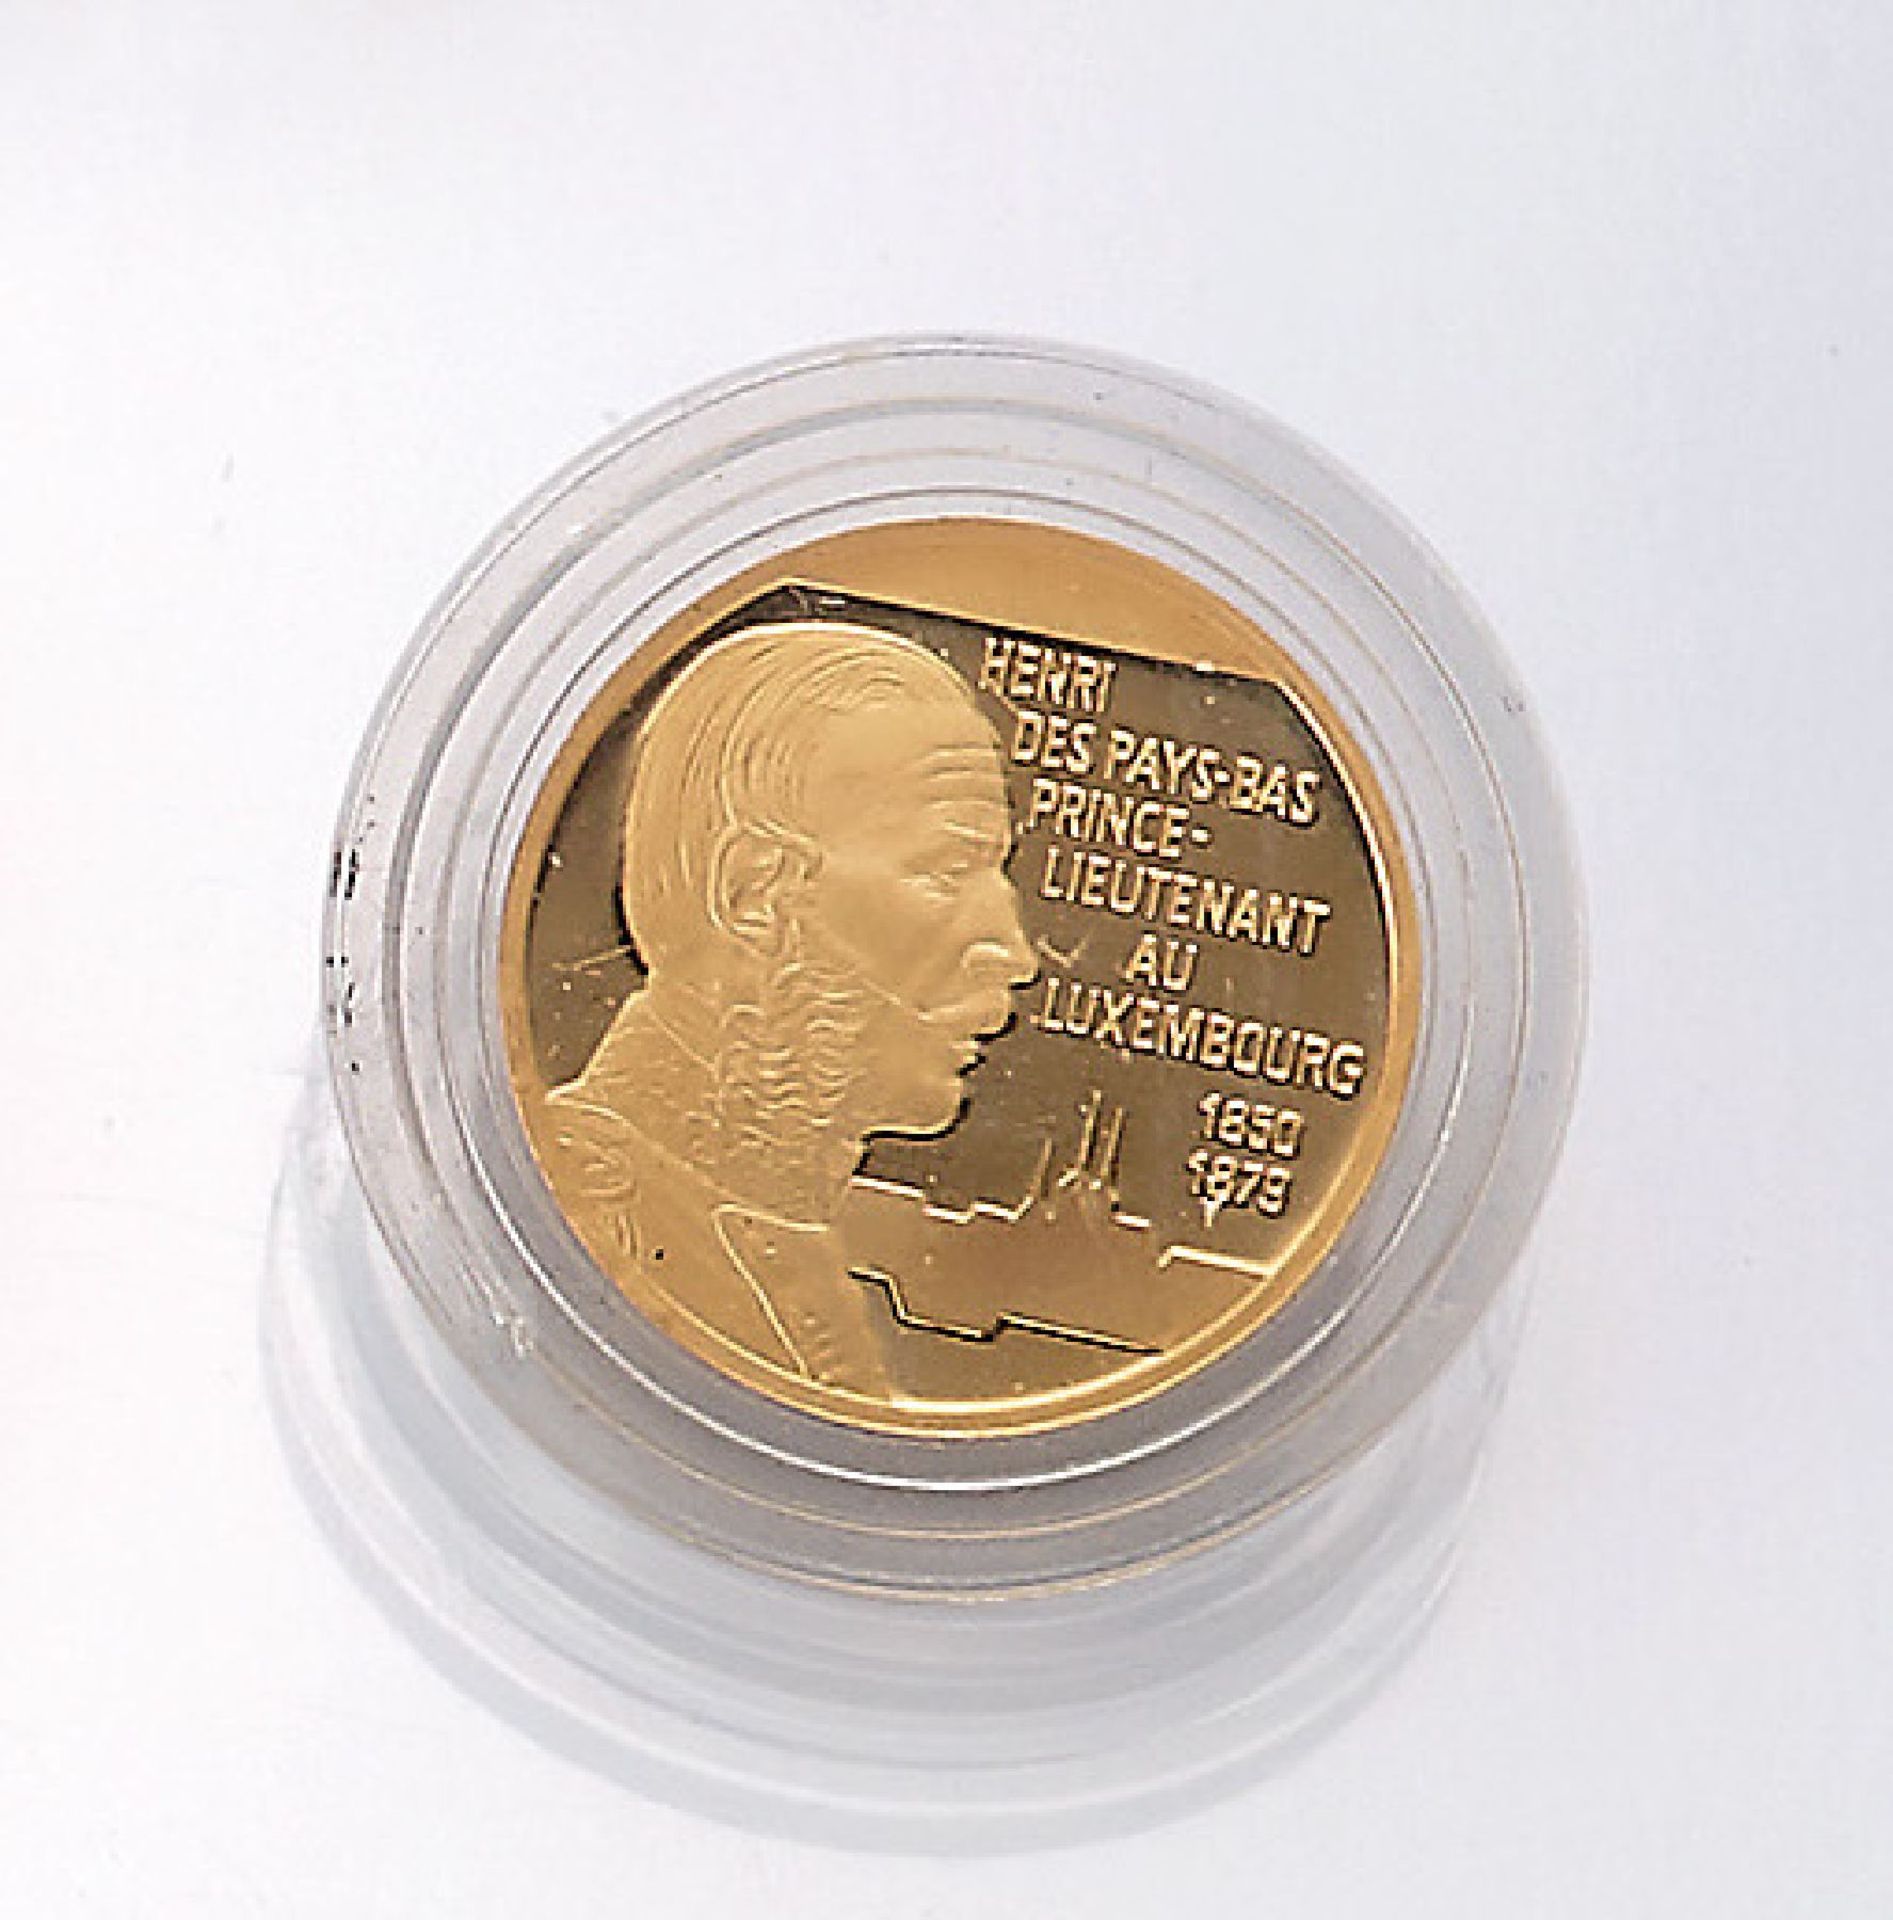 Goldmünze, 100 EURO, Luxemburg, 1996, GG 900/000, 8.63 g, Henri des Pays-Bas Prince- Lieutenant au